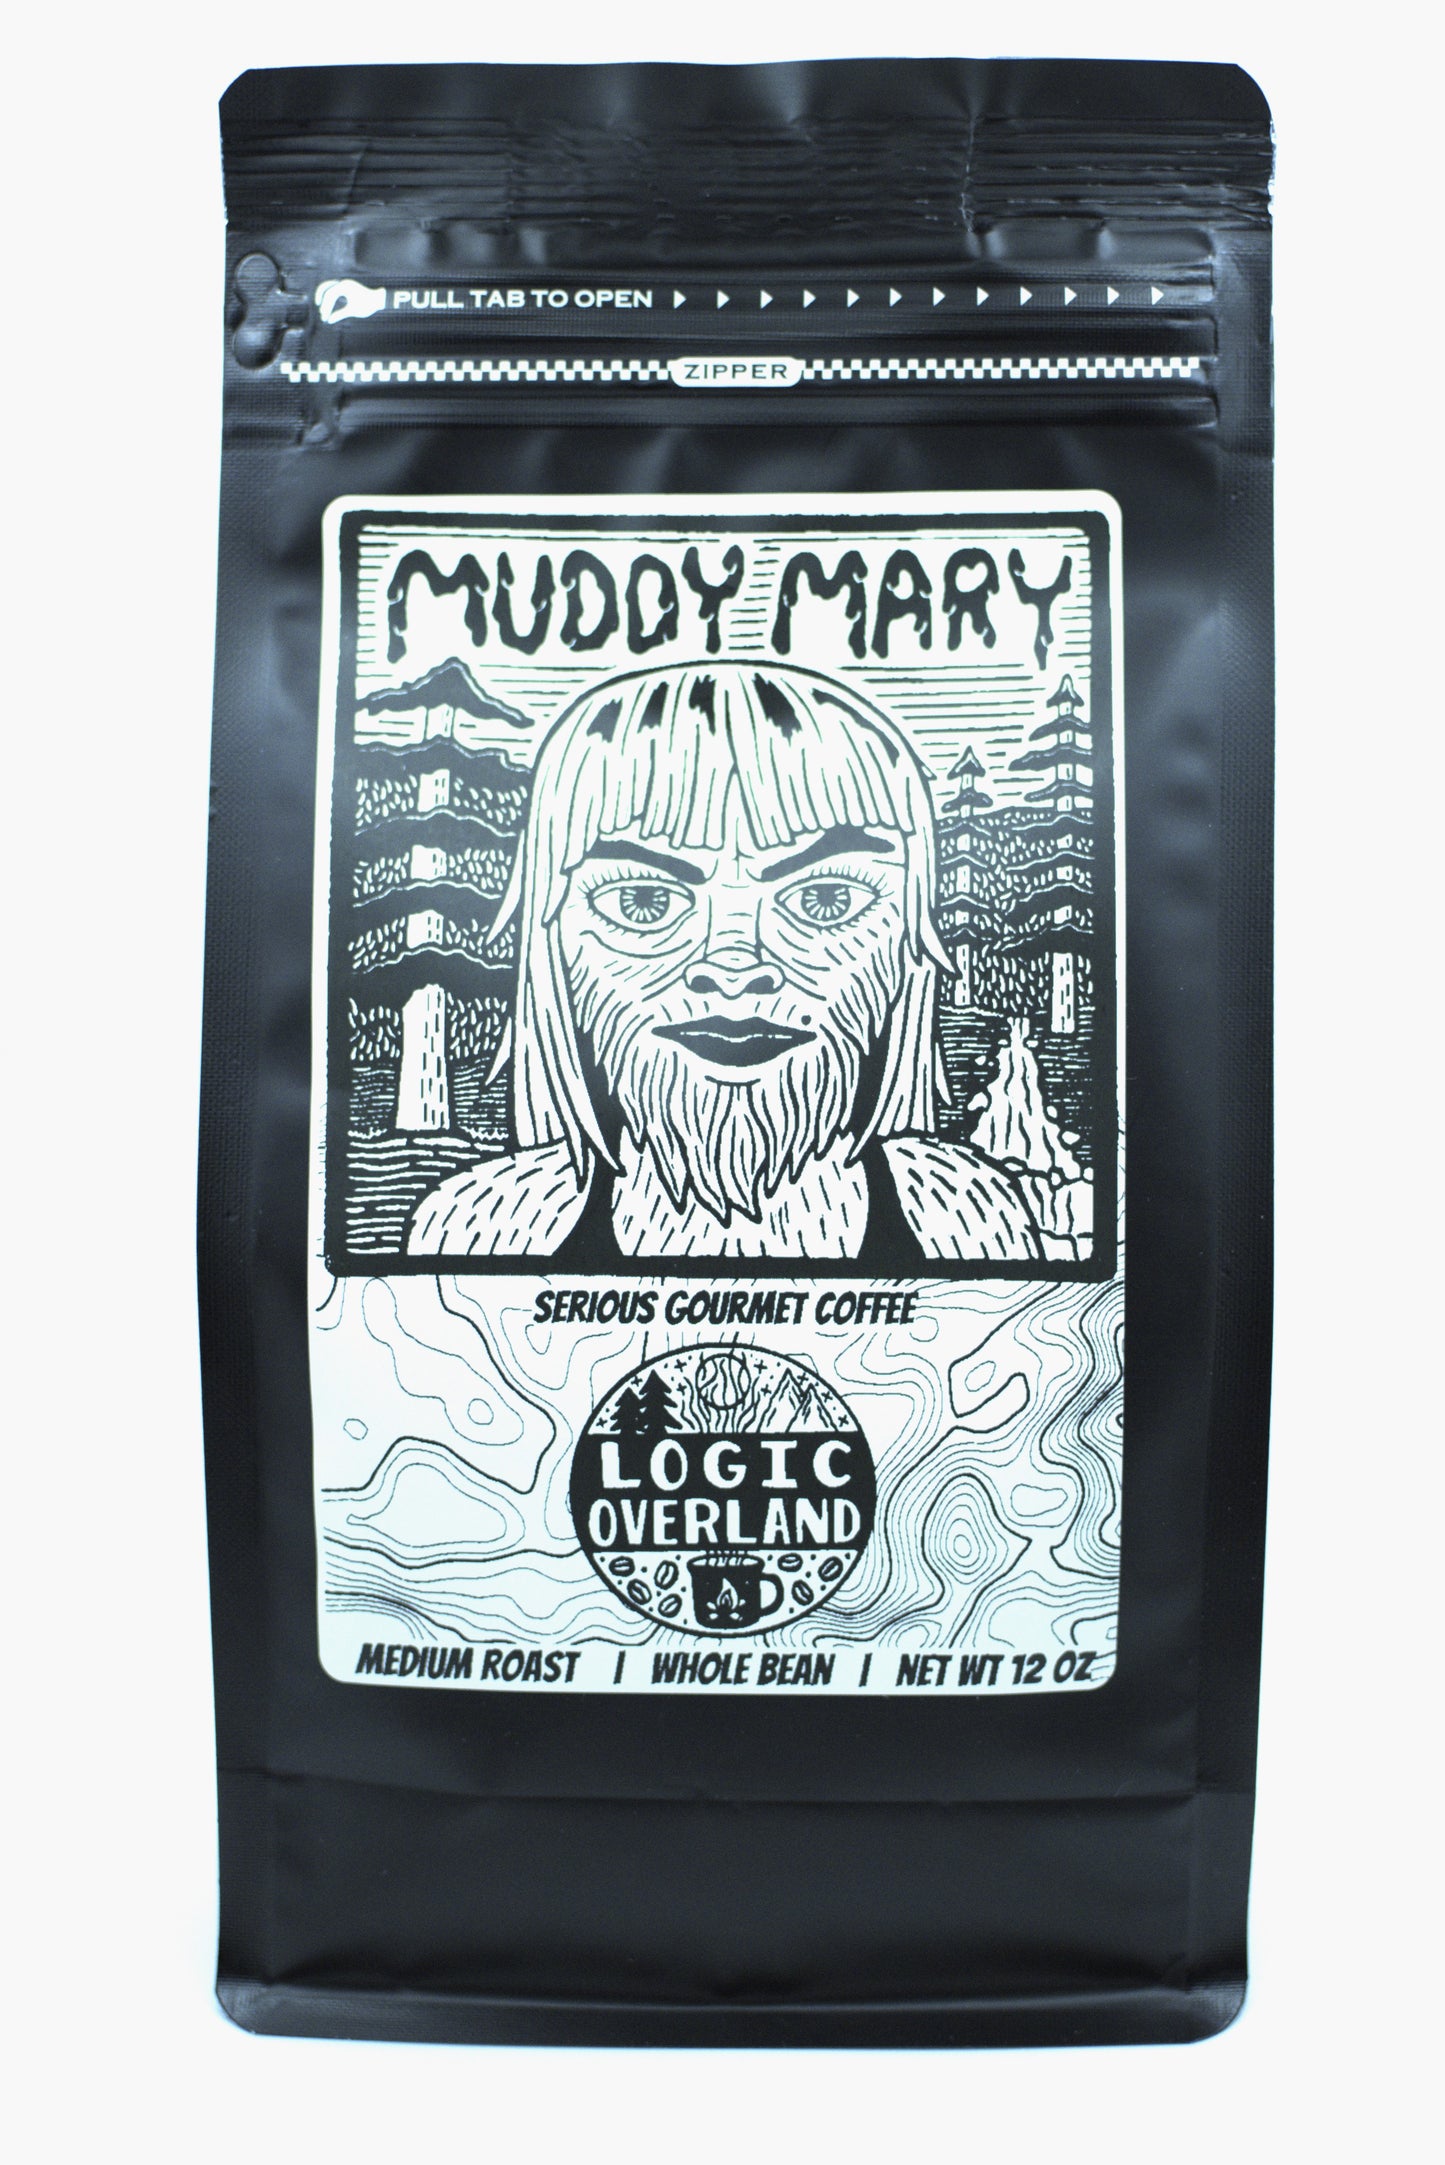 Muddy Mary